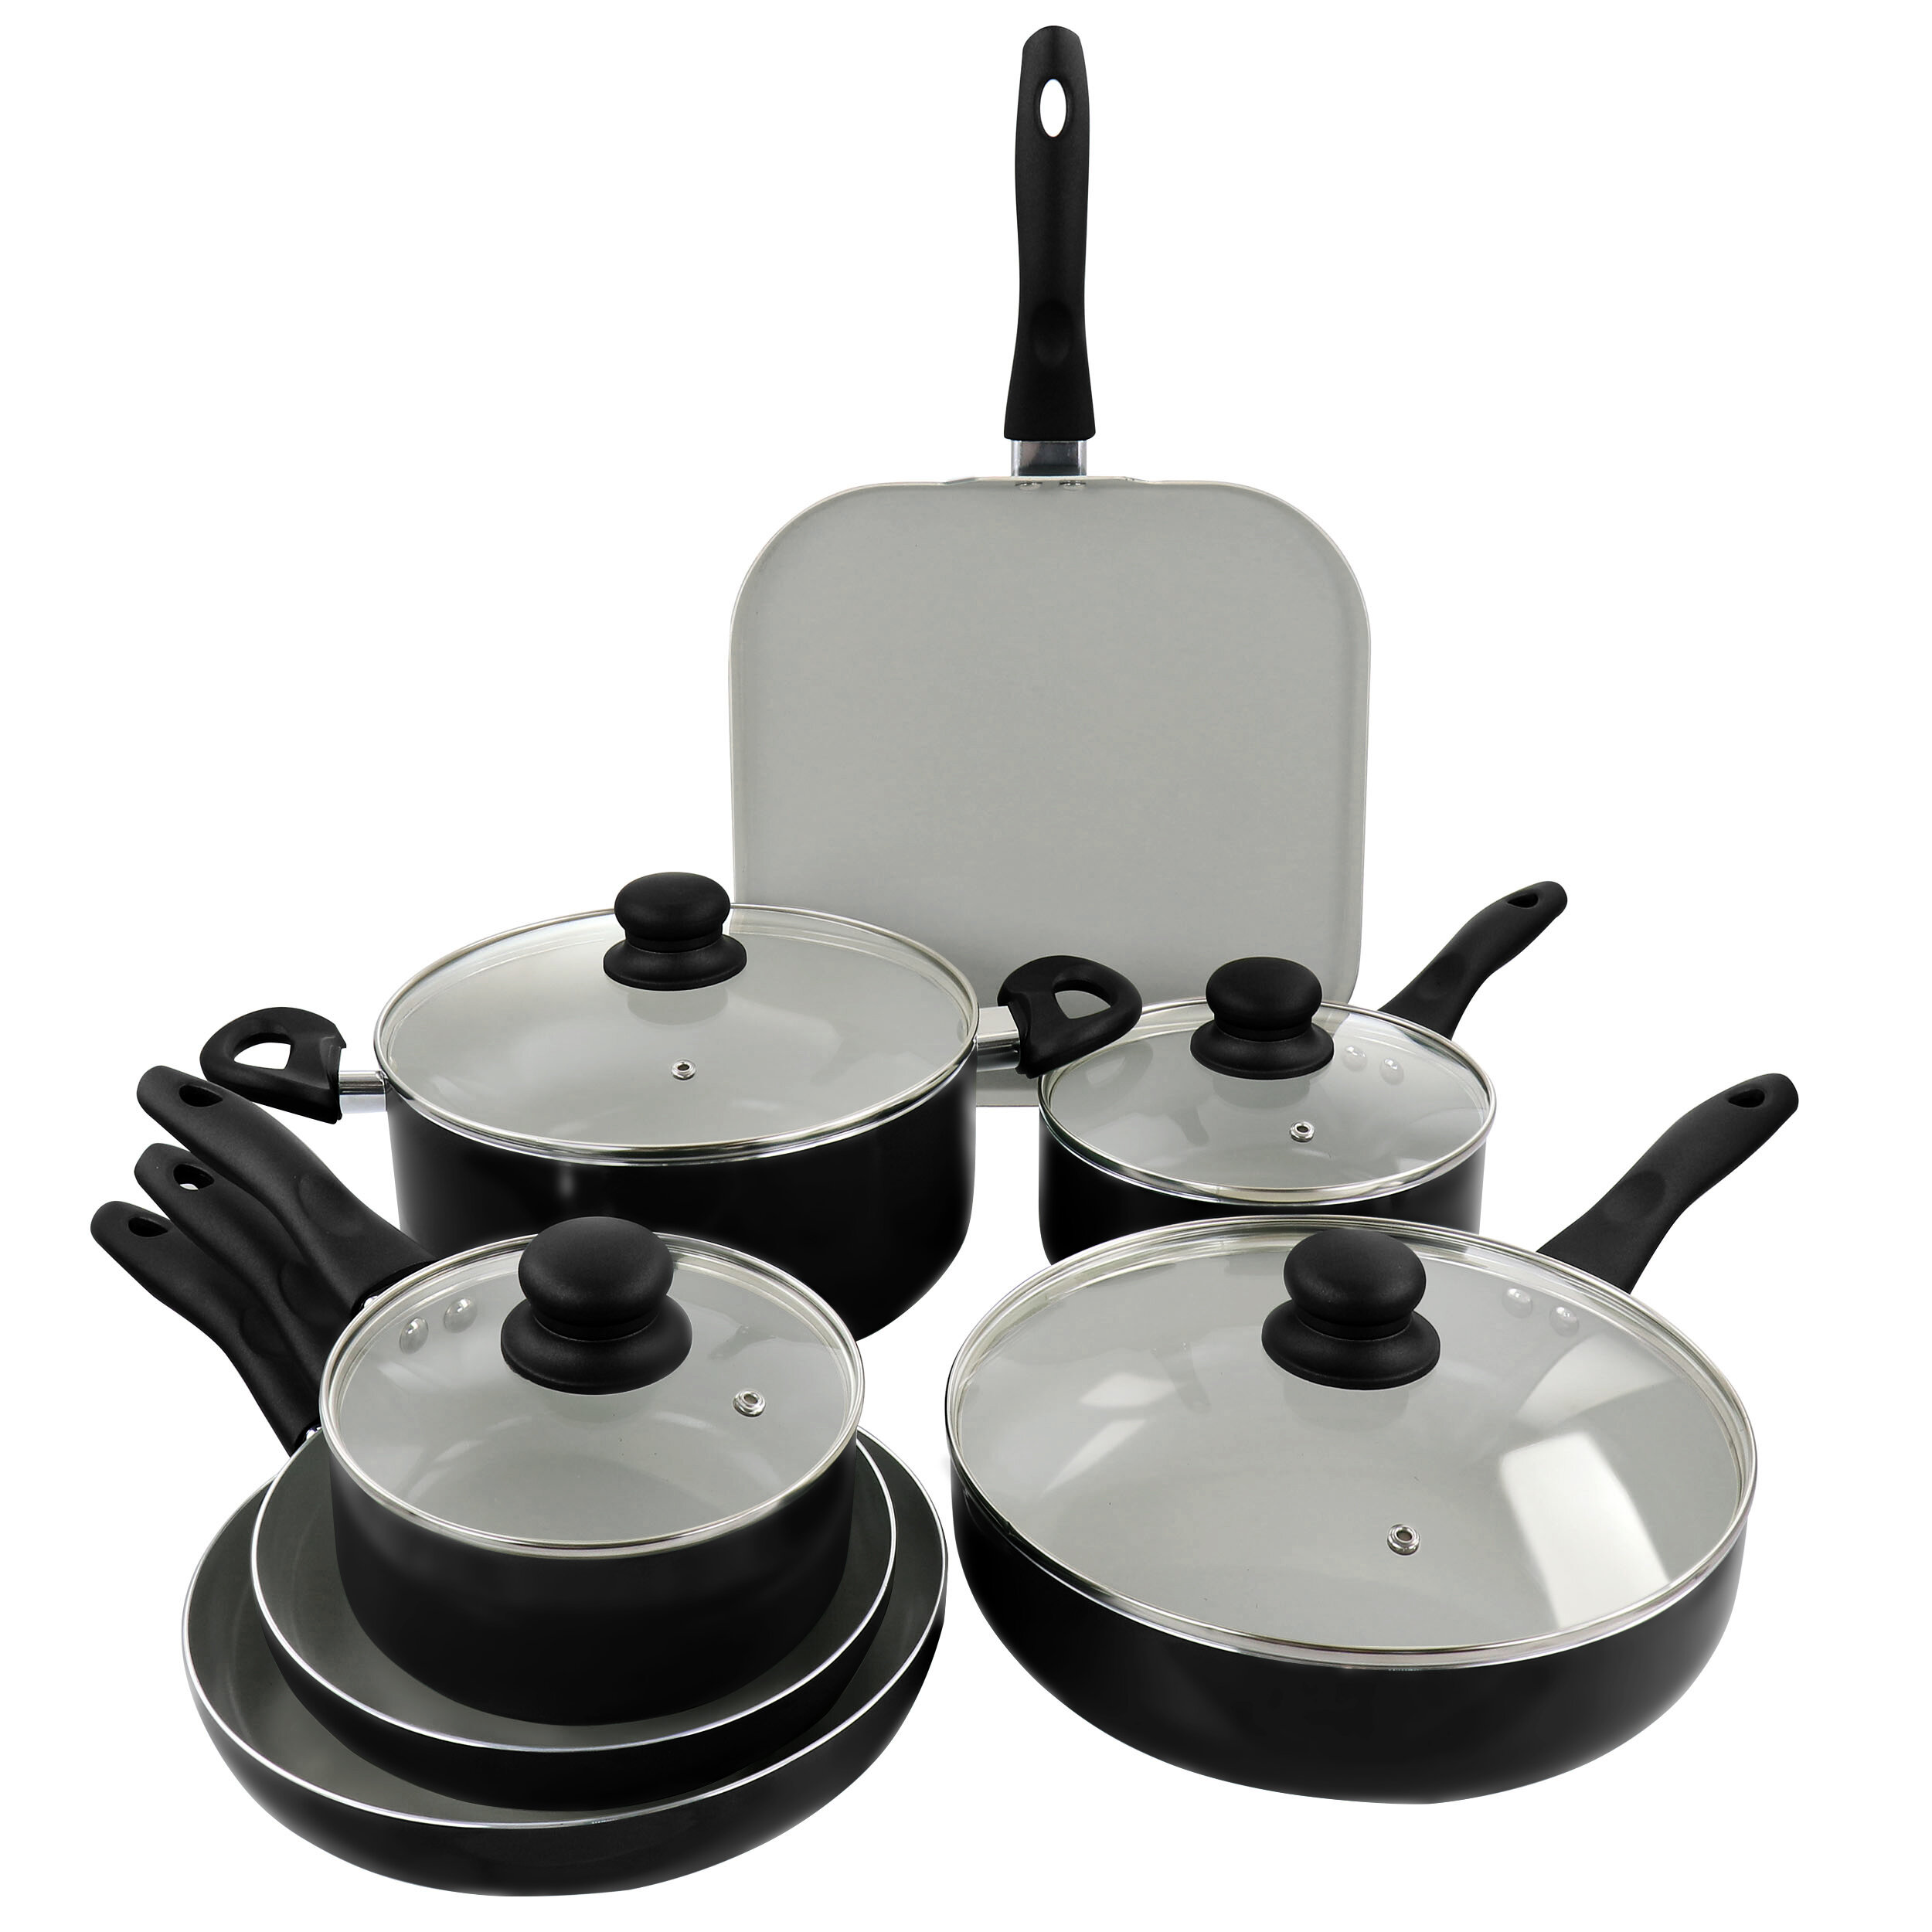 https://assets.wfcdn.com/im/69310226/compr-r85/1846/184661259/gibson-home-gazebo-ceramic-nonstick-aluminum-11-piece-cookware-set-in-black.jpg